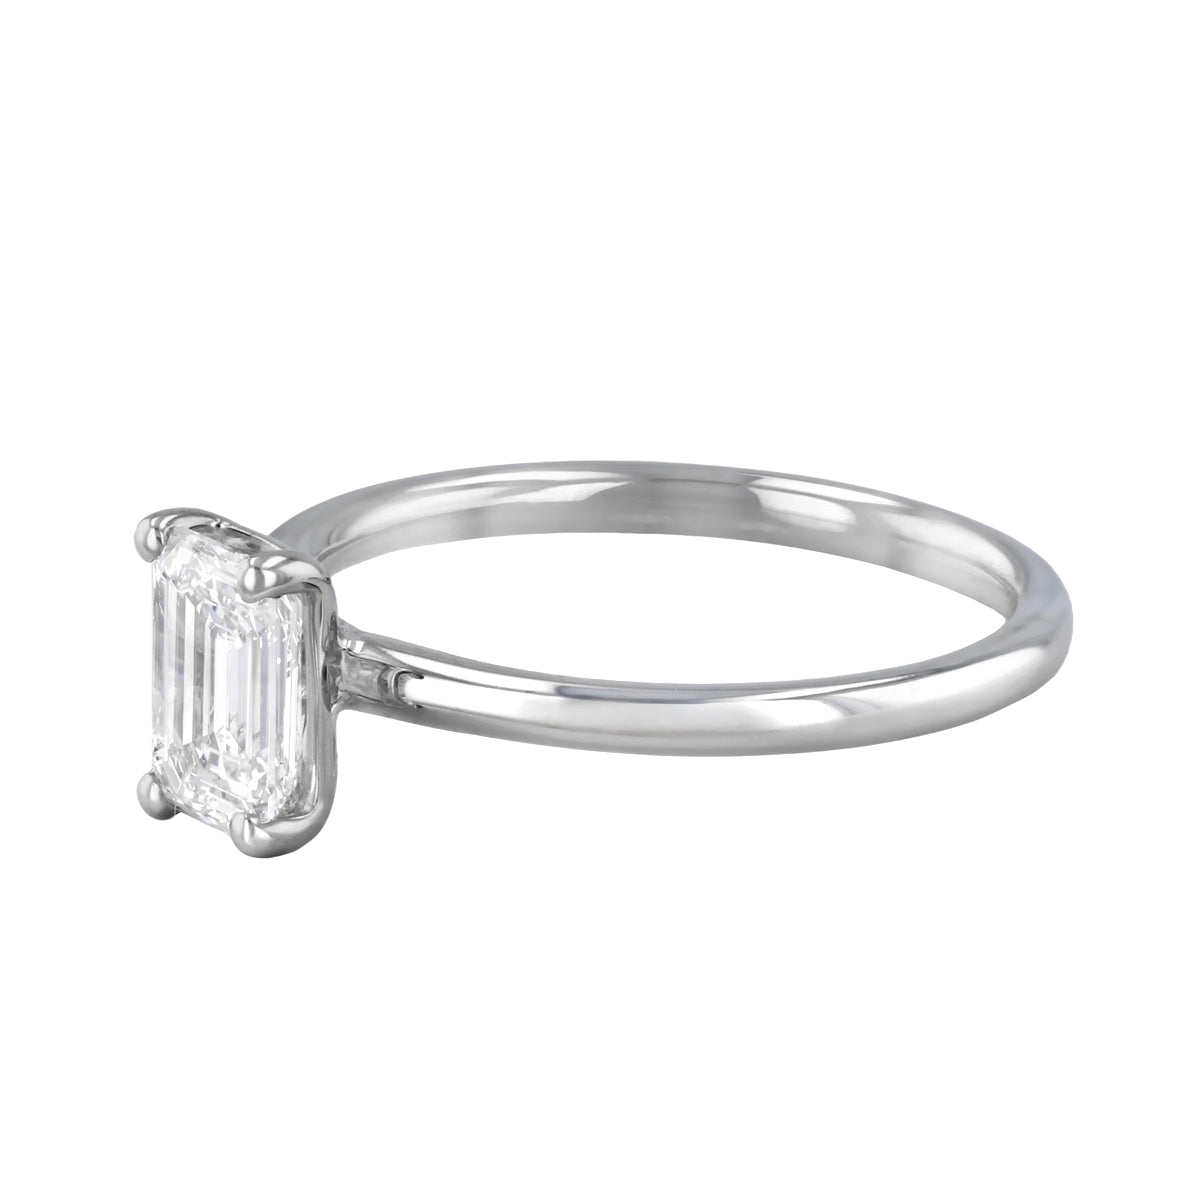 0-50ct-sofia-emerald-cut-solitaire-diamond-engagement-ring-platinum